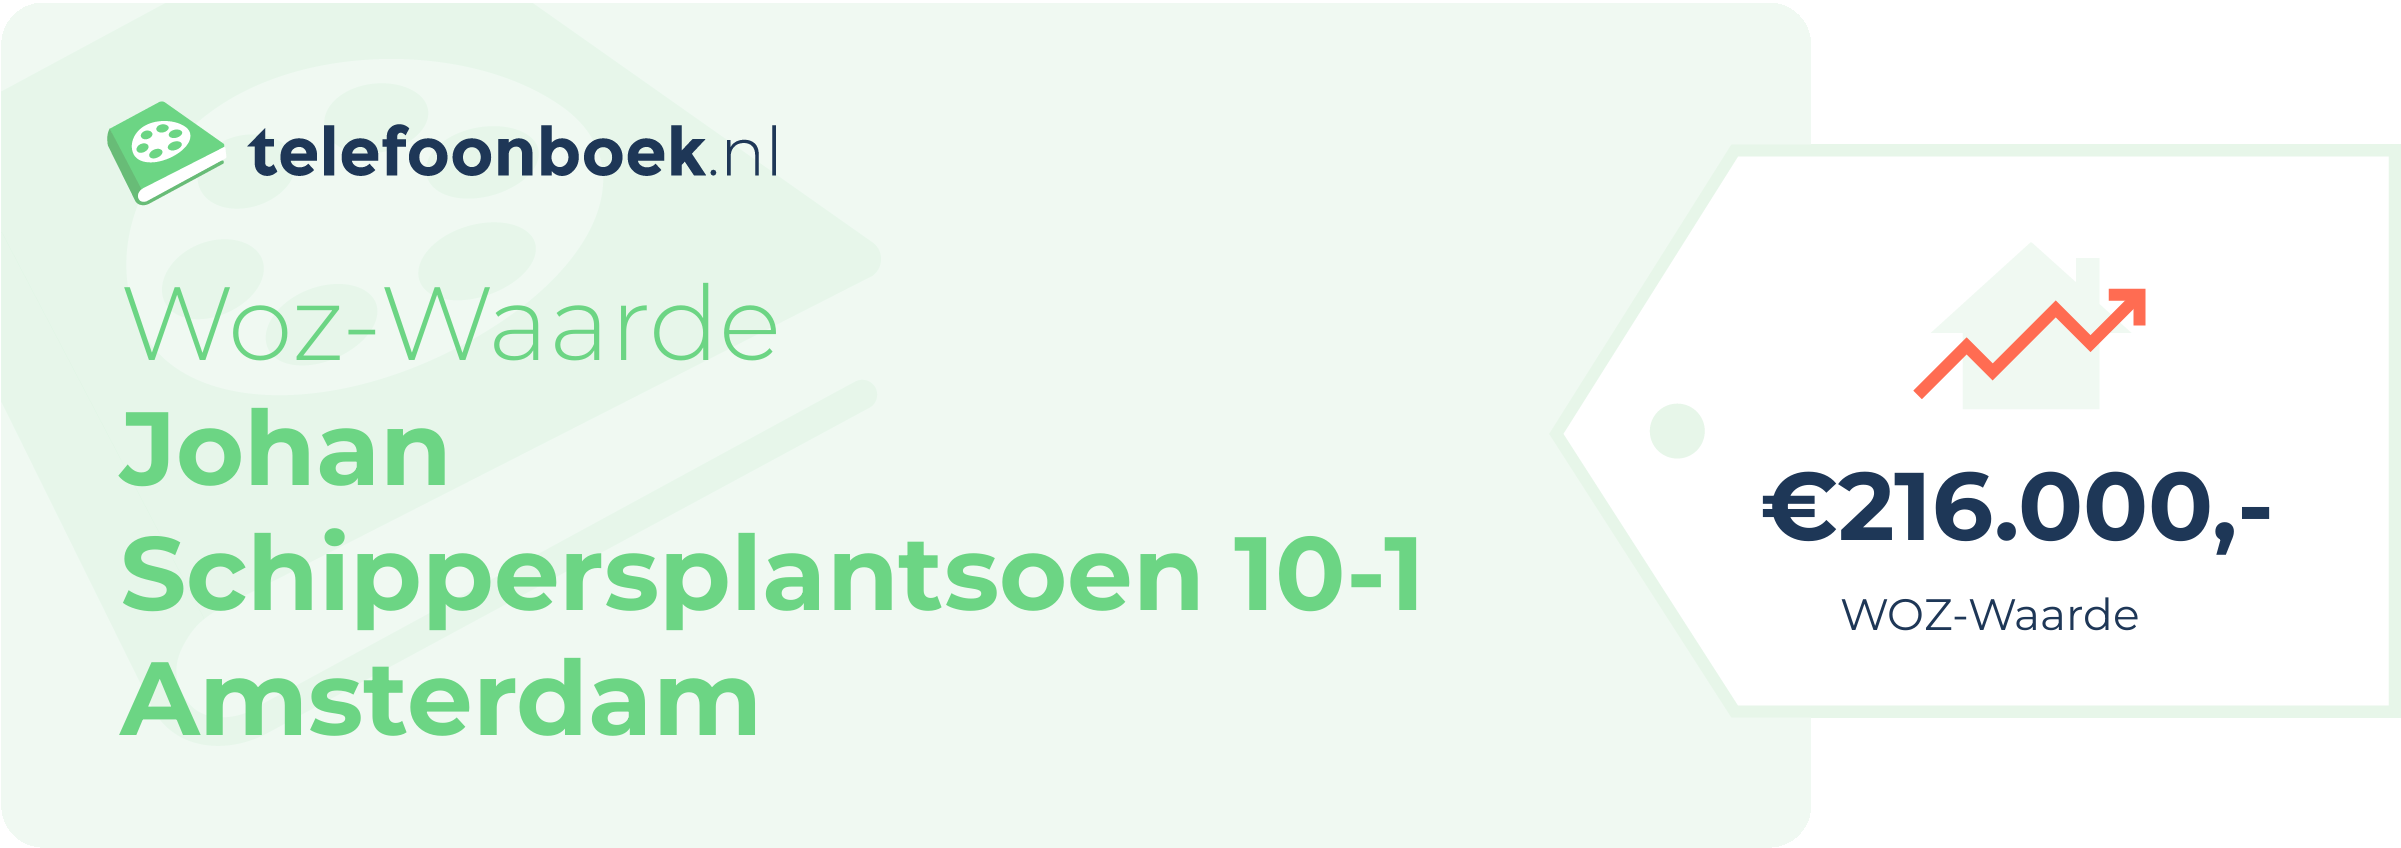 WOZ-waarde Johan Schippersplantsoen 10-1 Amsterdam